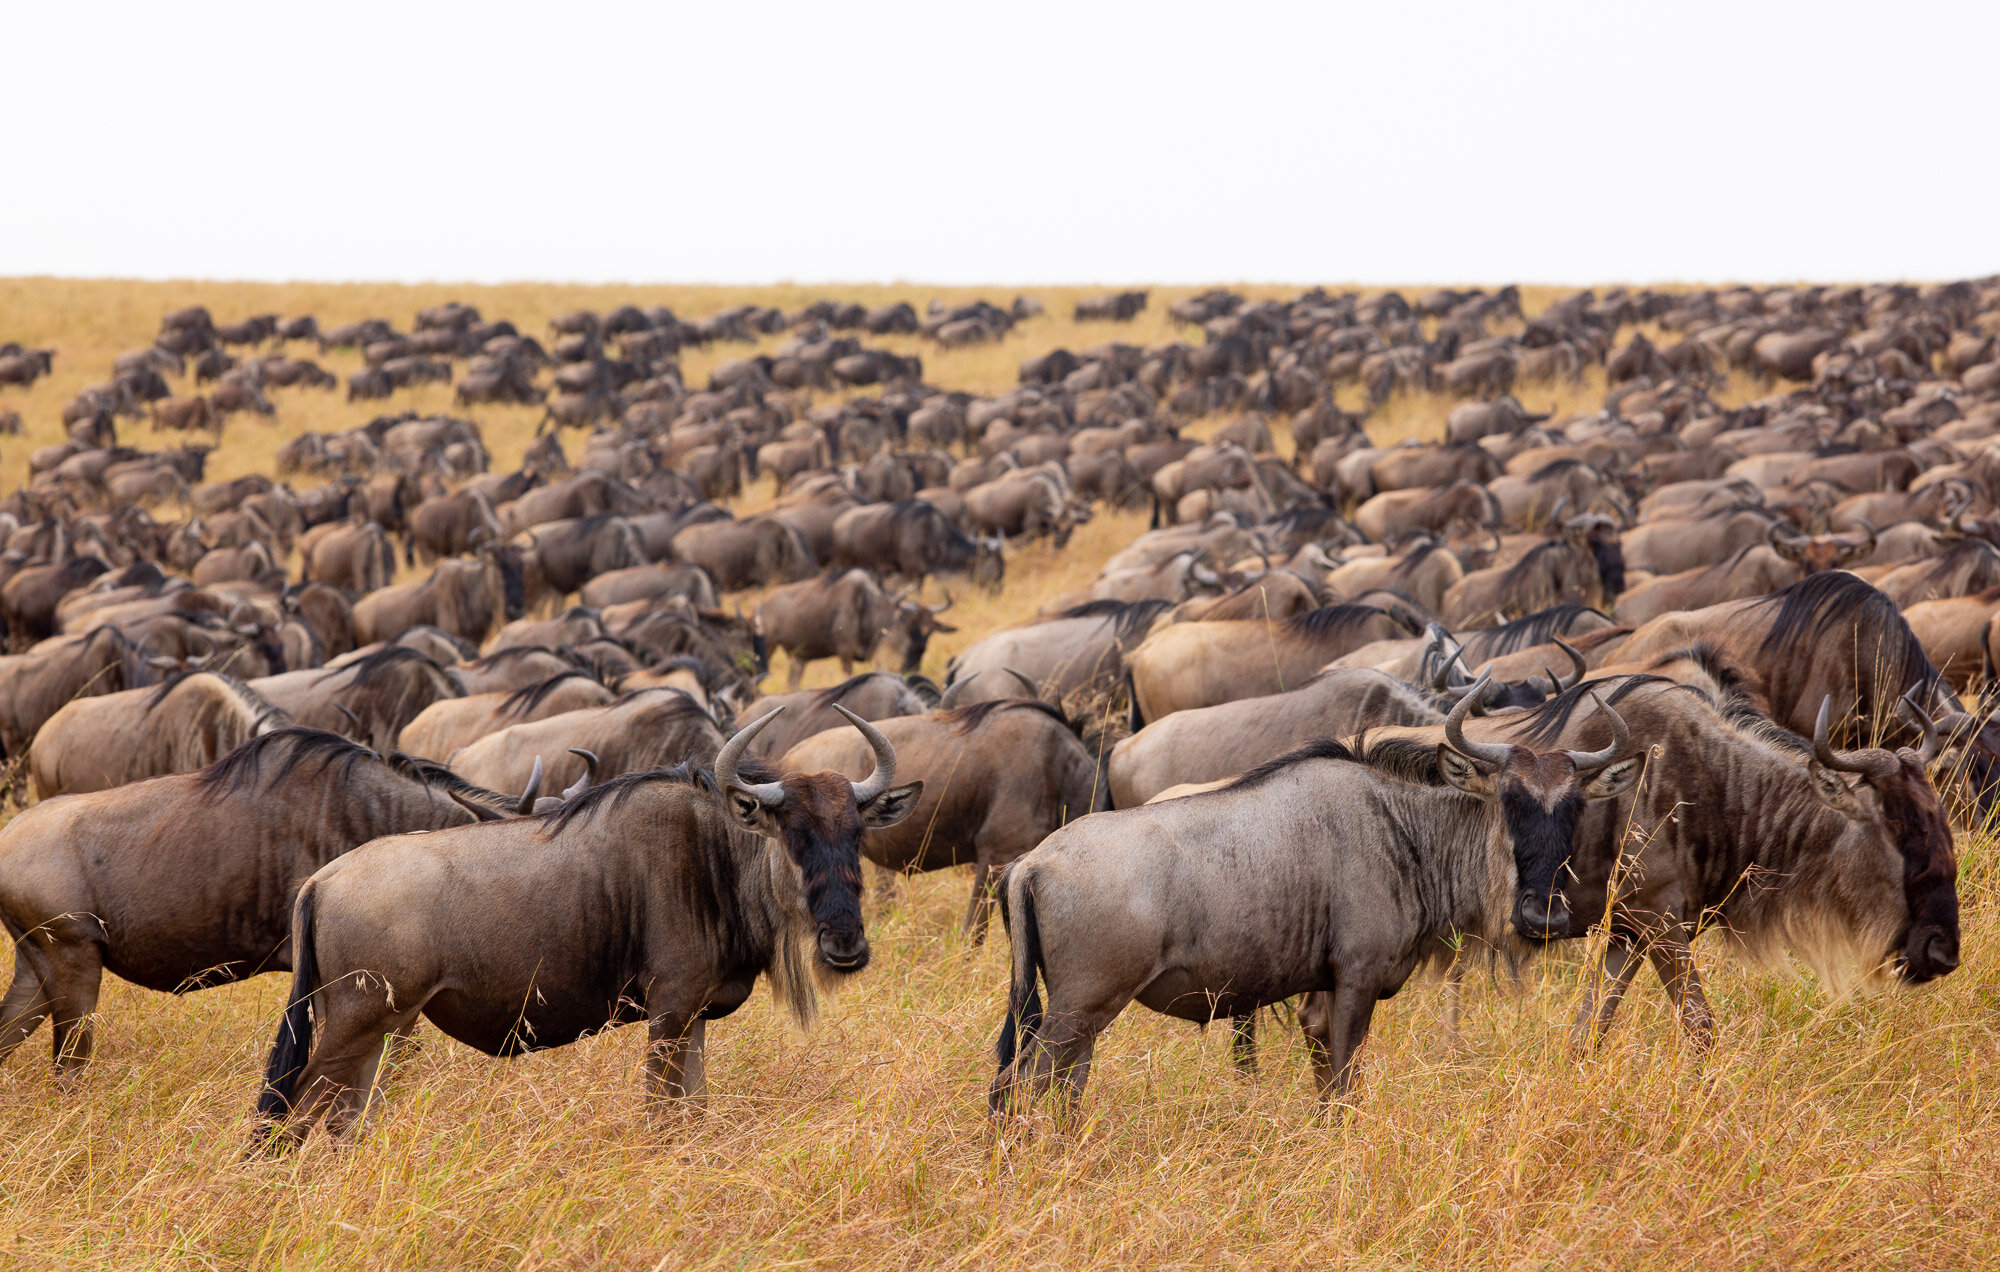 Nyasi Migrational Camp, Serengeti National Park, Tanzania